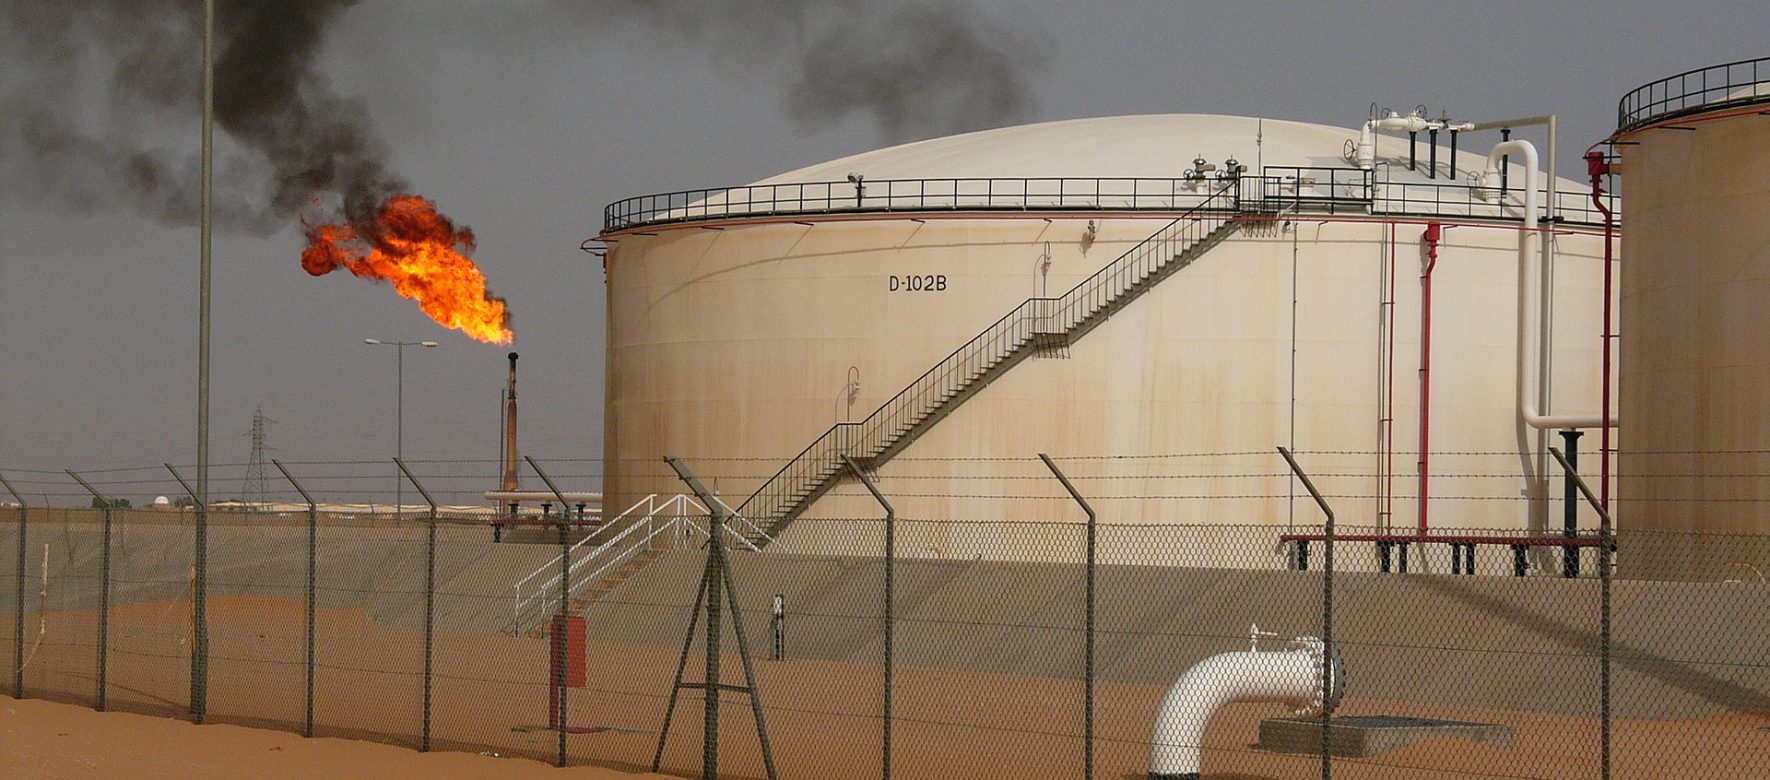 32 découvertes de pétrole et de gaz effectuées par la Sonatrach en 2016